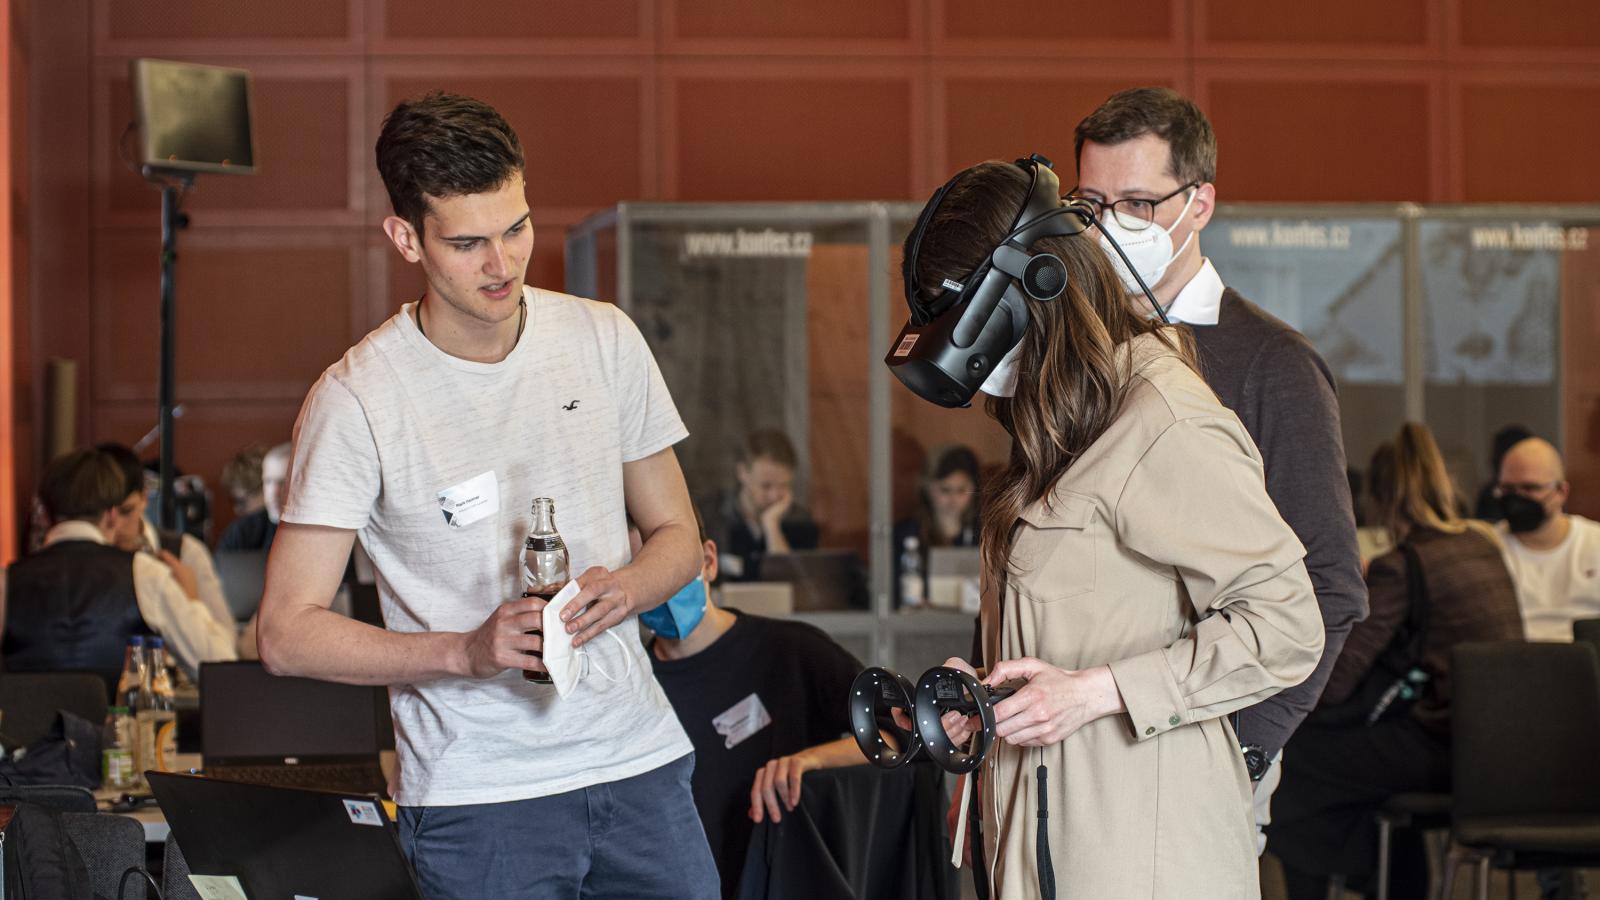 Eine Teilnehmerin der Preisverleihung von Coding da Vinci Ost³ 2022 testet mit einer Virtual Reality Brille ein Projekt aus. Der Entwickler des Projekts erklärt ihr die Funktionsweise.